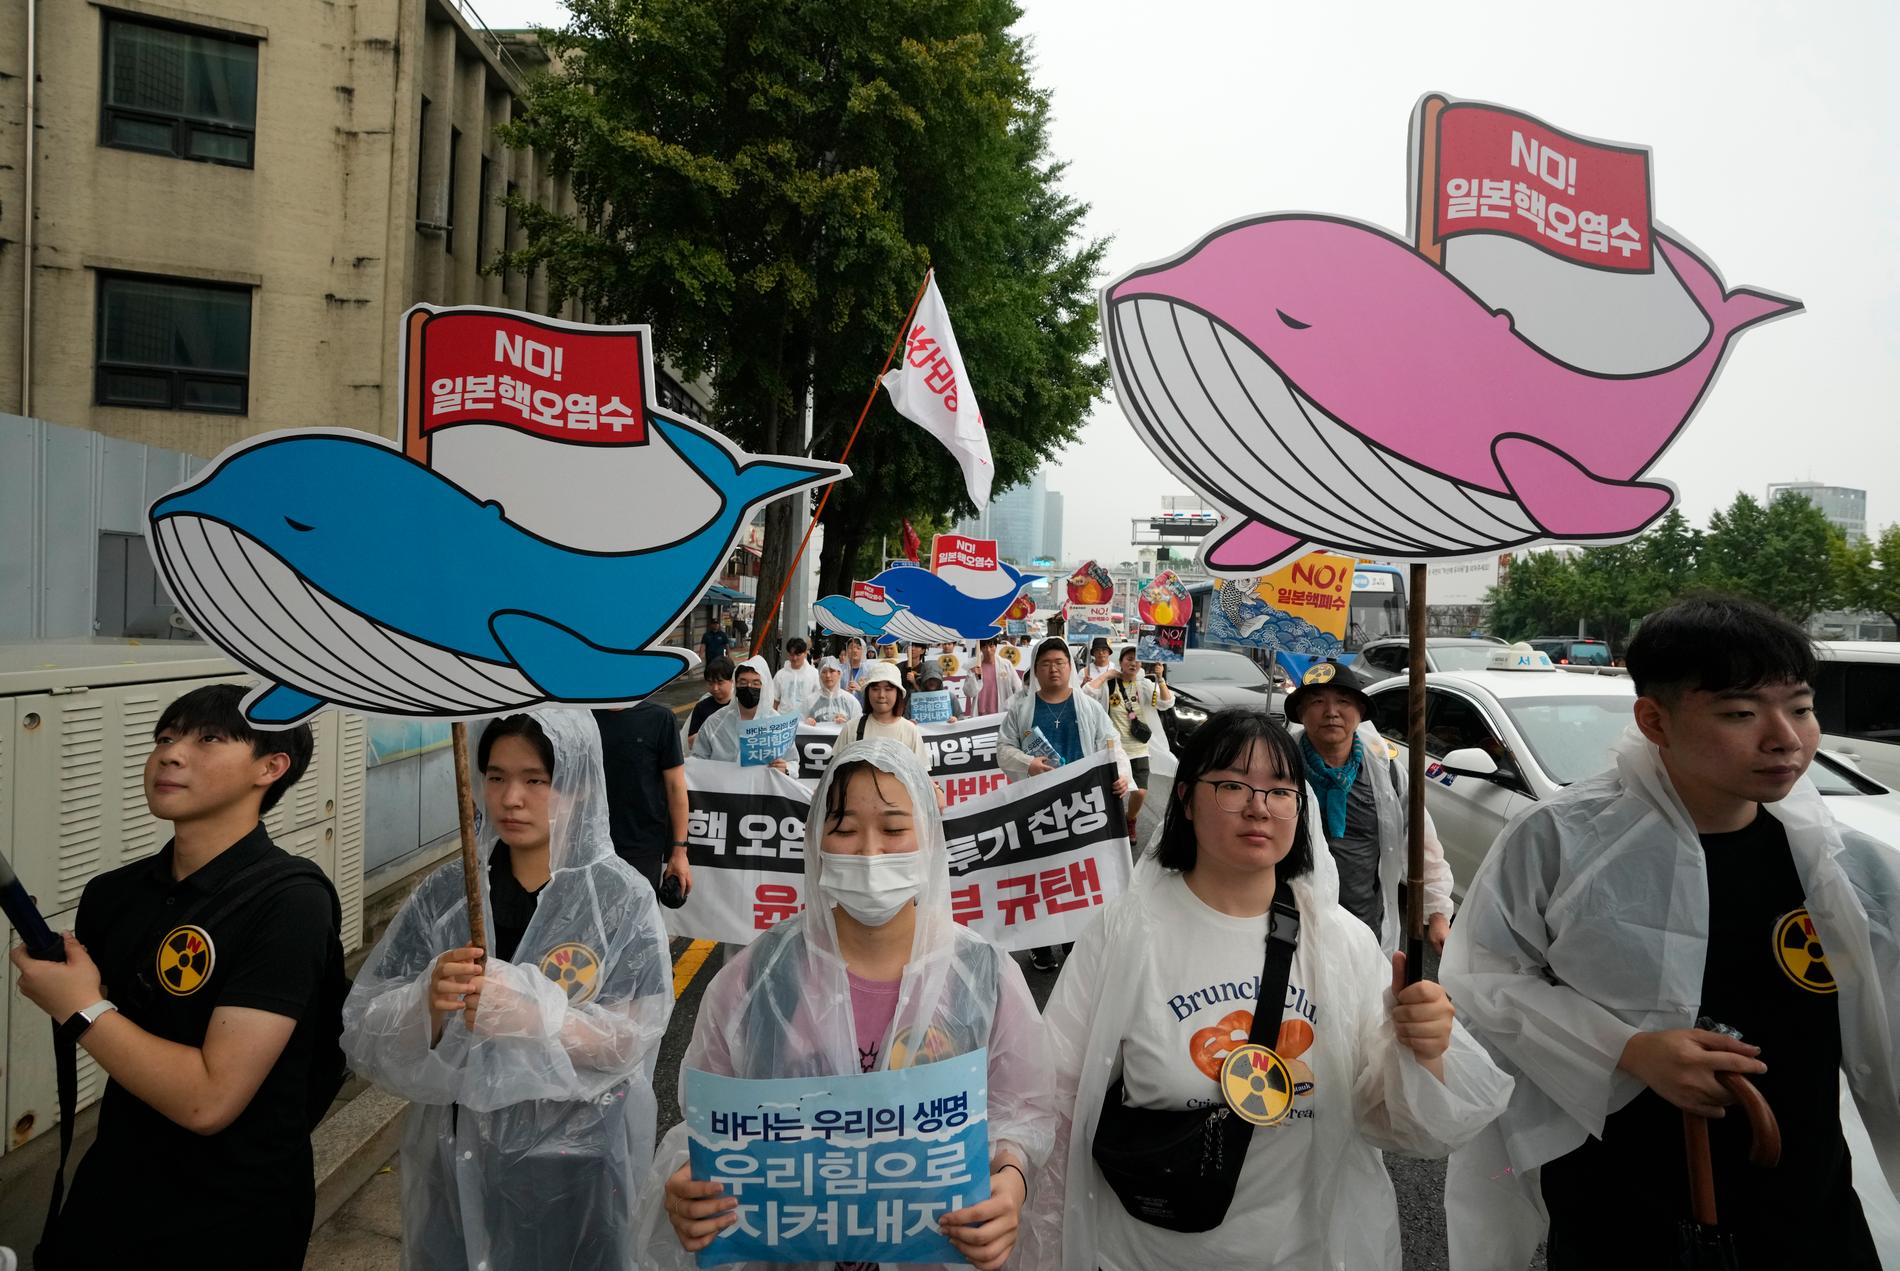 Miljöorganisationer i Sydkorea vill att det radioaktiva vattnet hellre grävs ned i marken eller förångas, två andra vedertagna metoder som de anser är säkrare än att pumpa ut det i havet. Demonstrationen ovan genomfördes i huvudstaden Seoul juli i år.